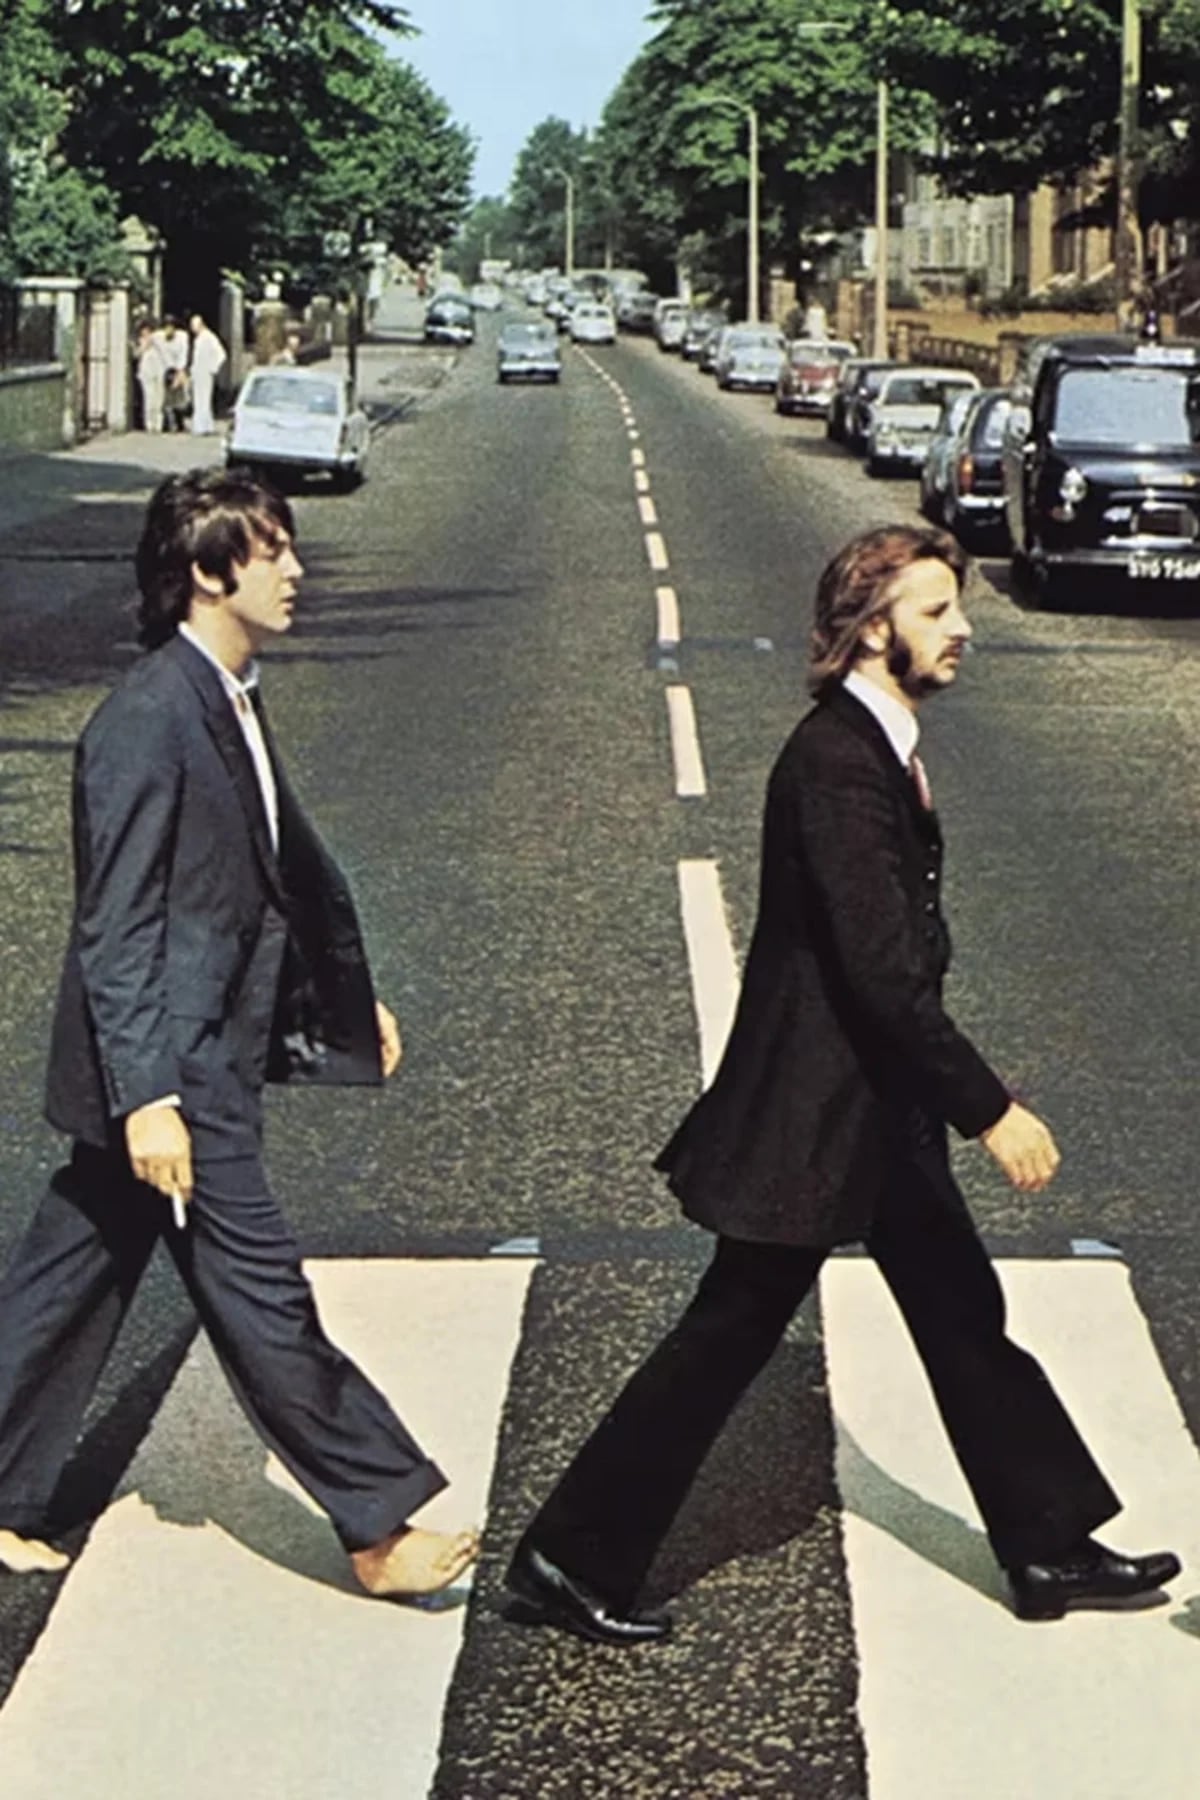 Beatles Abbey Road se apresenta no dia 2 de setembro em Aracaju no